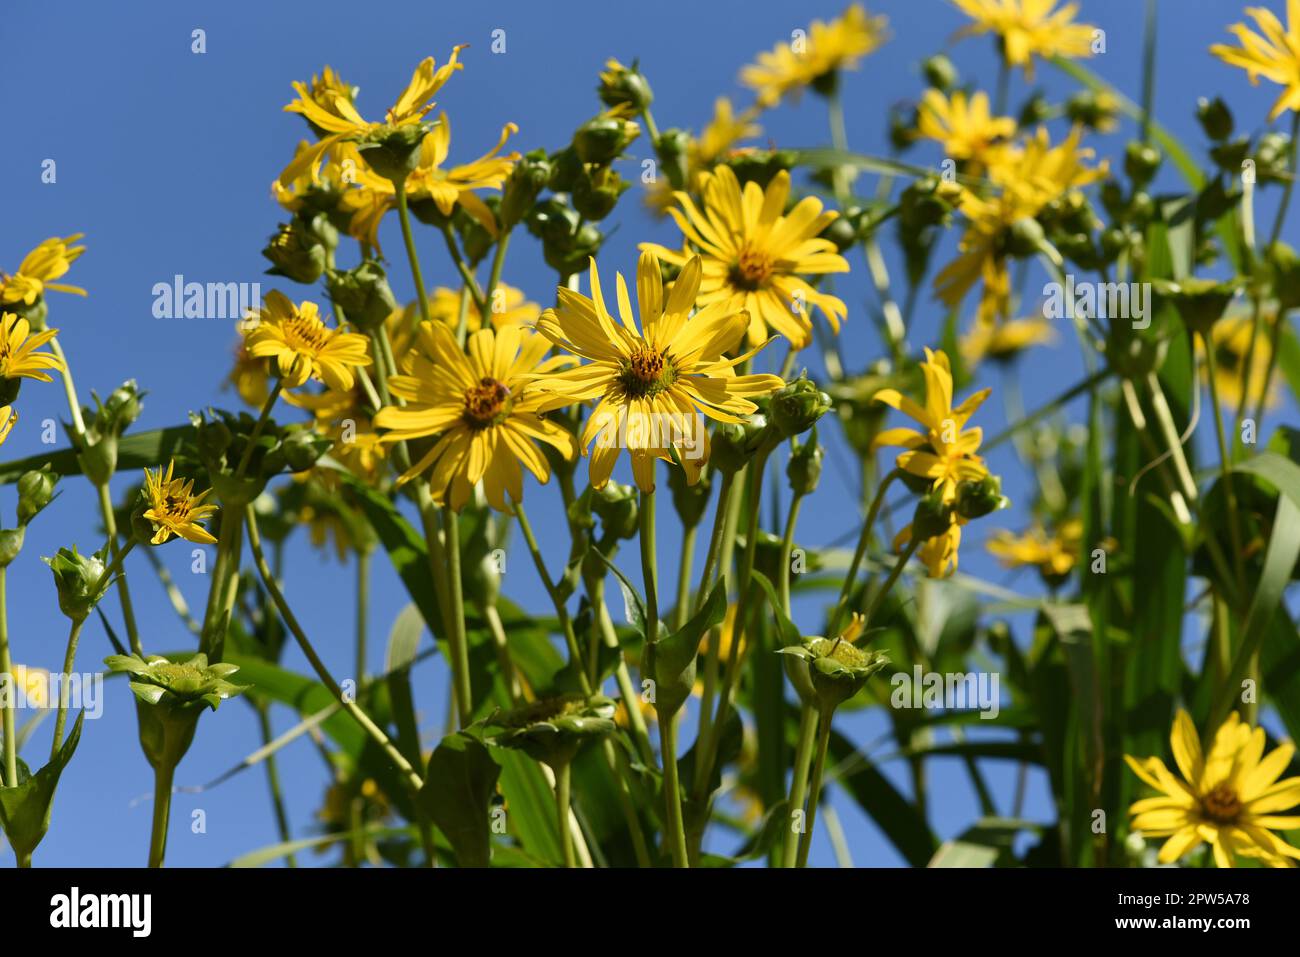 Becherpflanze, Silphium perfoliatum, Verwachsenblaettrige Becherpflanze kommt aus den USA und wird dort als Futterpflanze und Energiepflanze verwendet Stock Photo